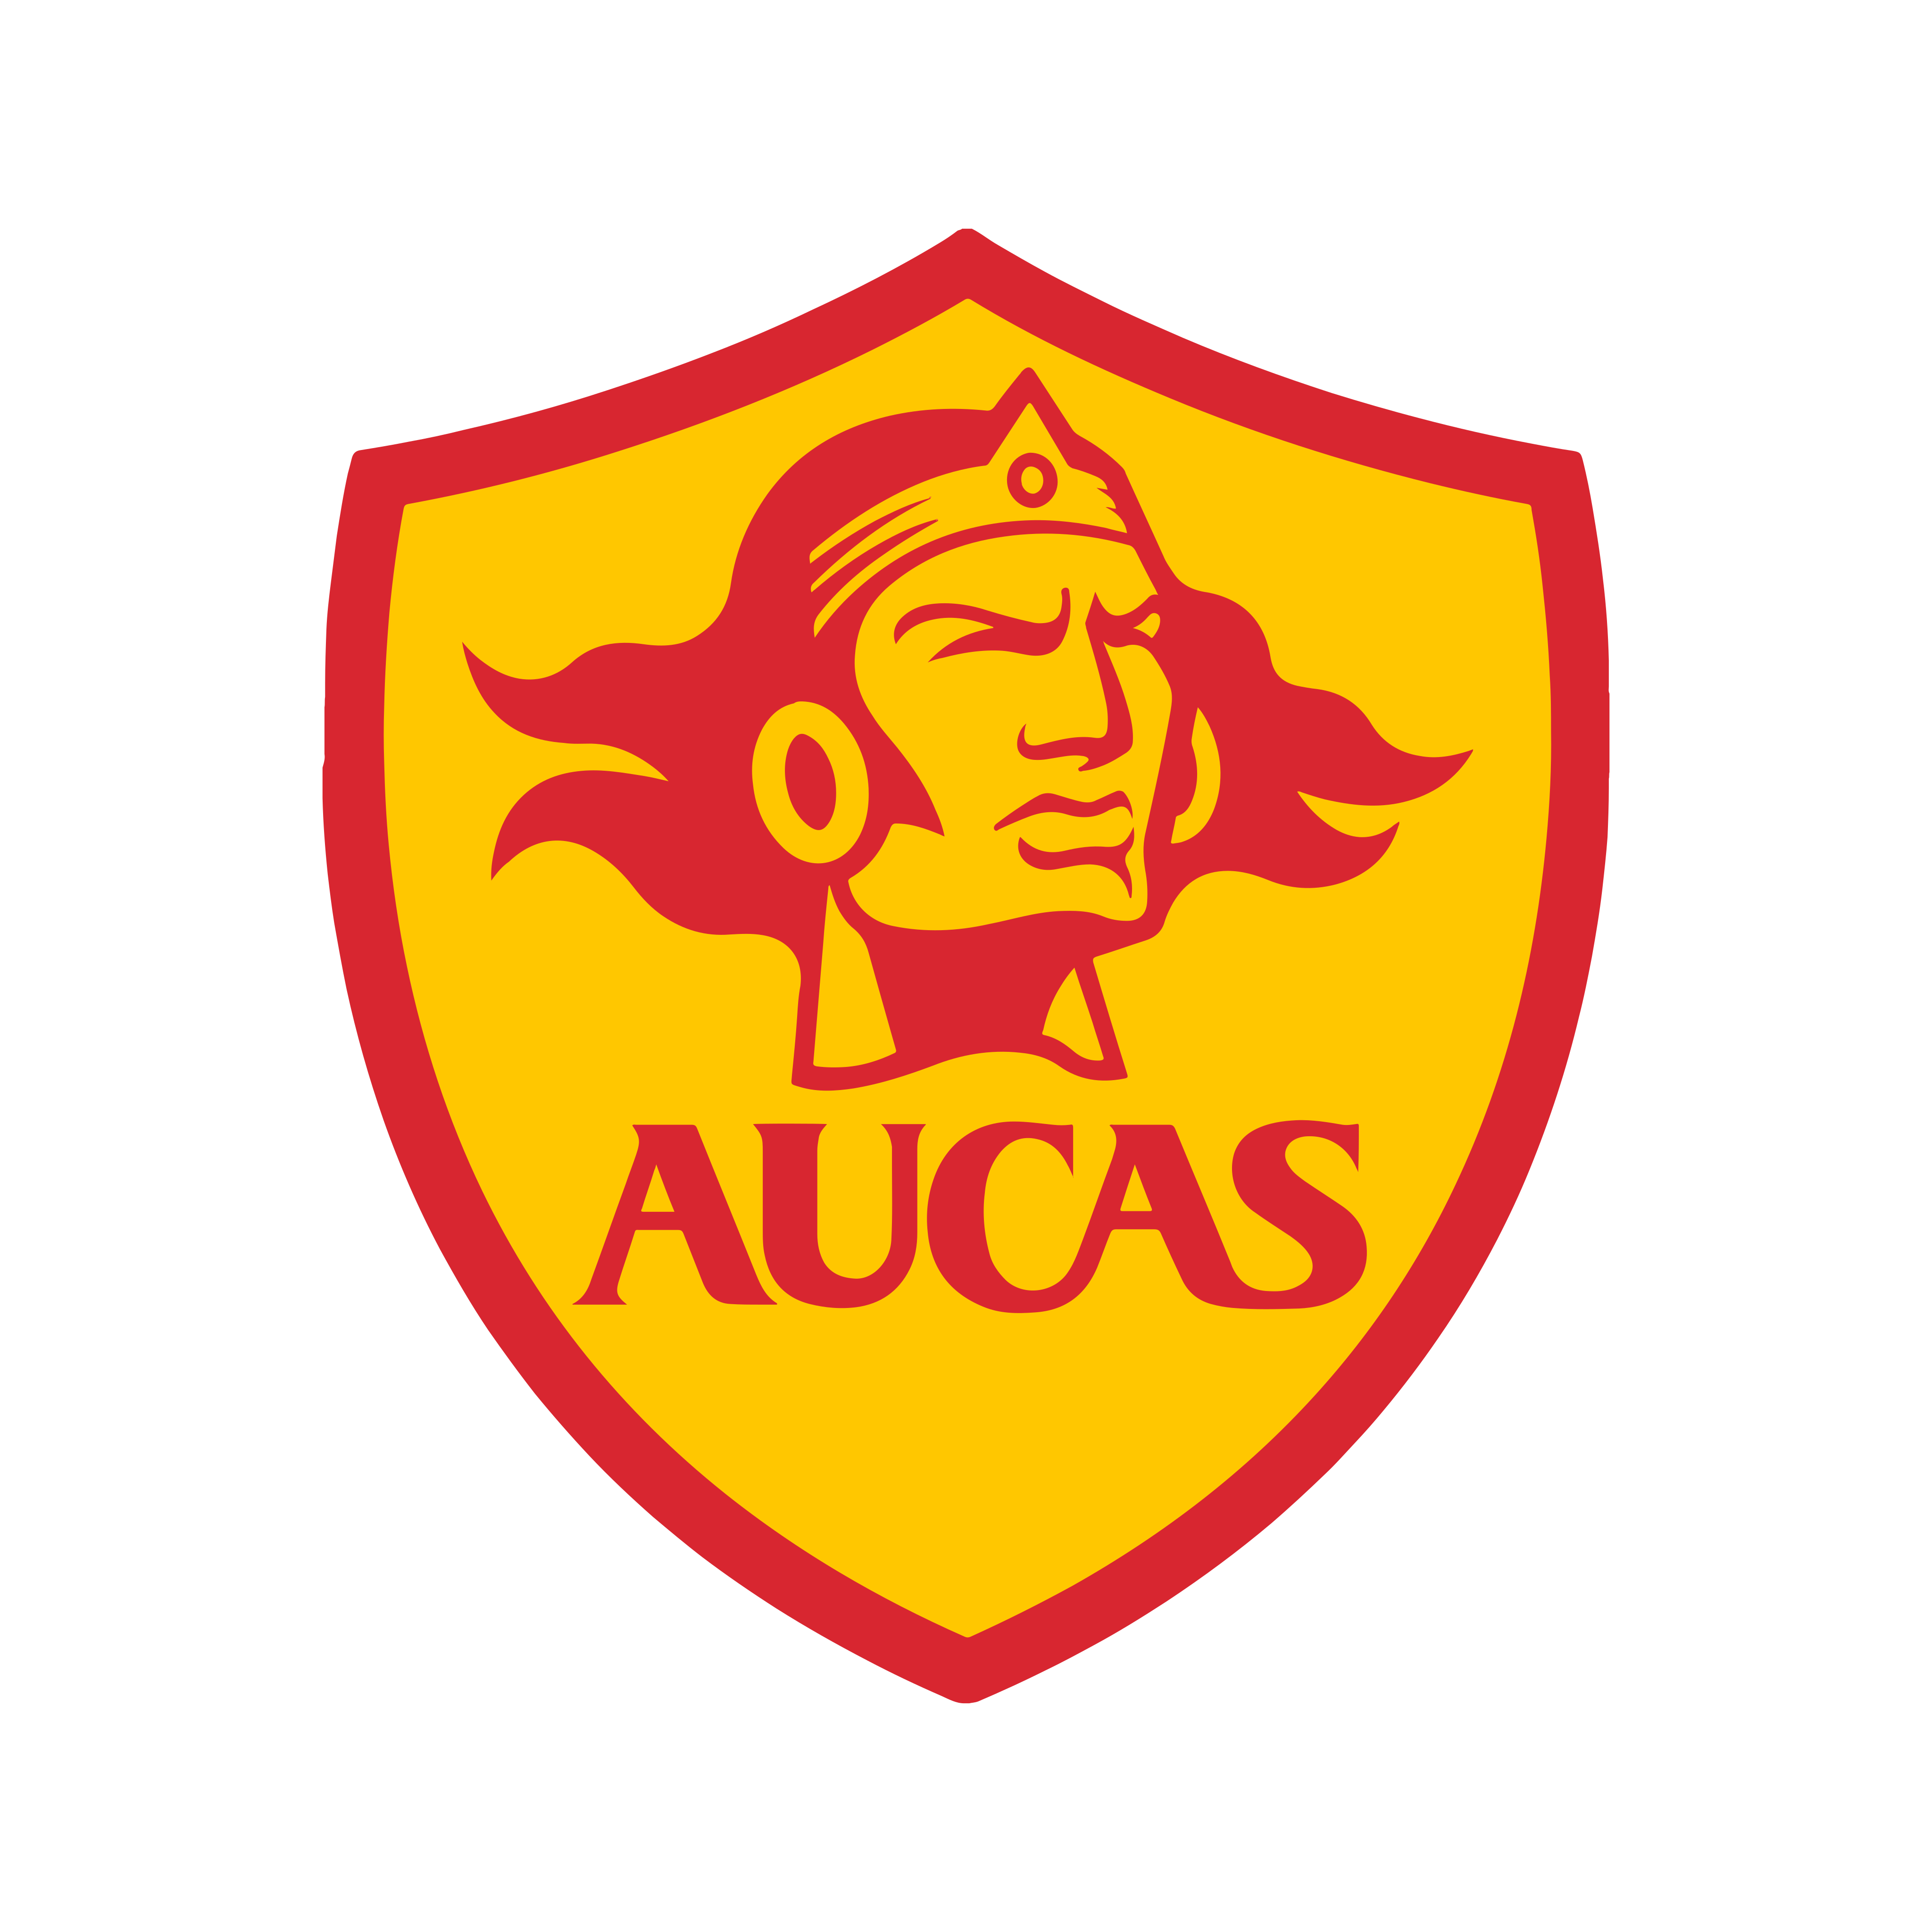 aucas logo 0 - S.D. Aucas Logo